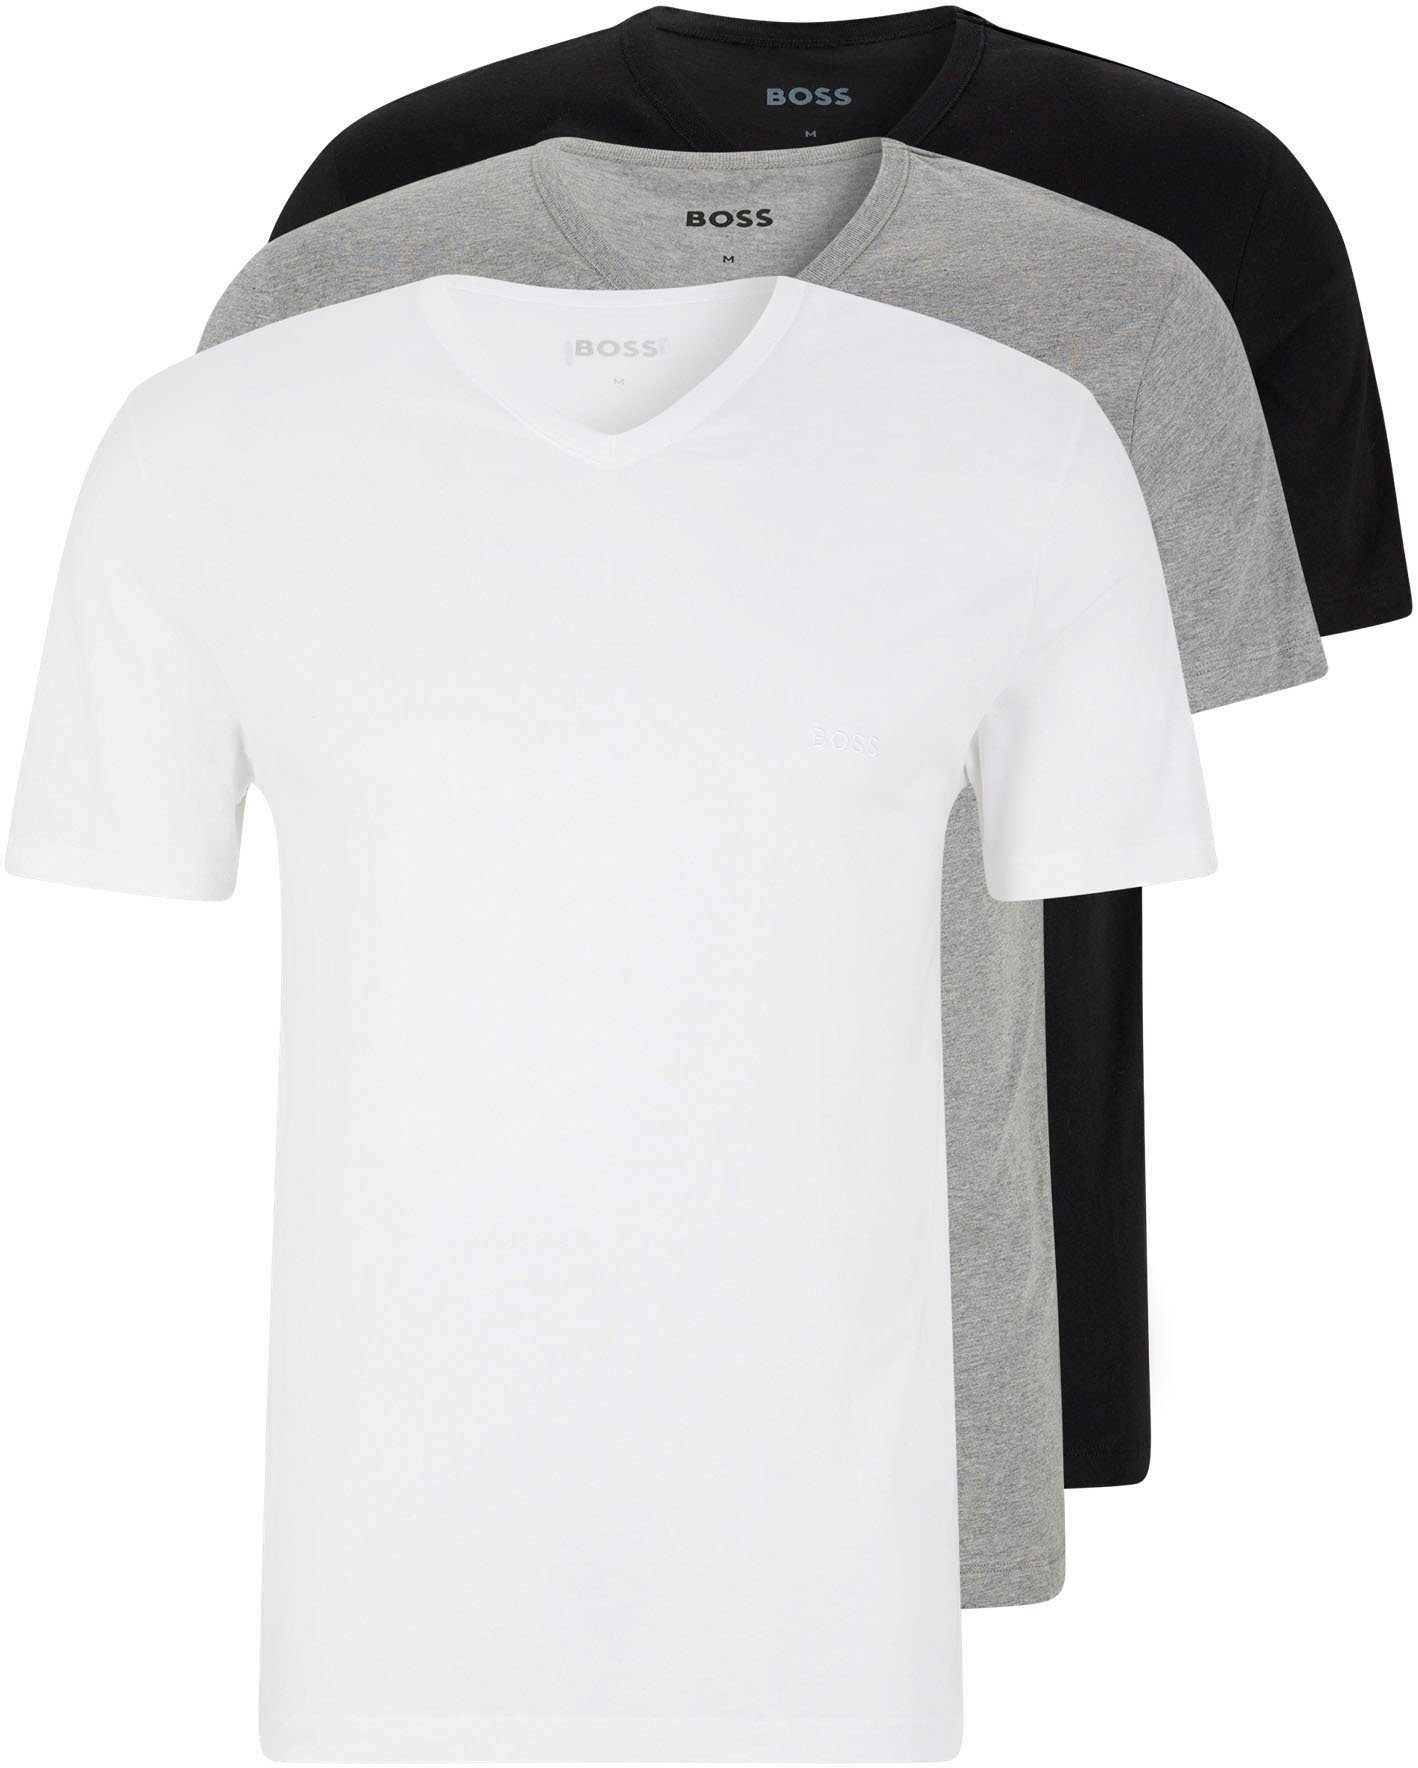 BOSS V-Shirt T-Shirt VN 3P CO (Packung) assorted pre-pack, grau-meliert, schwarz | V-Shirts